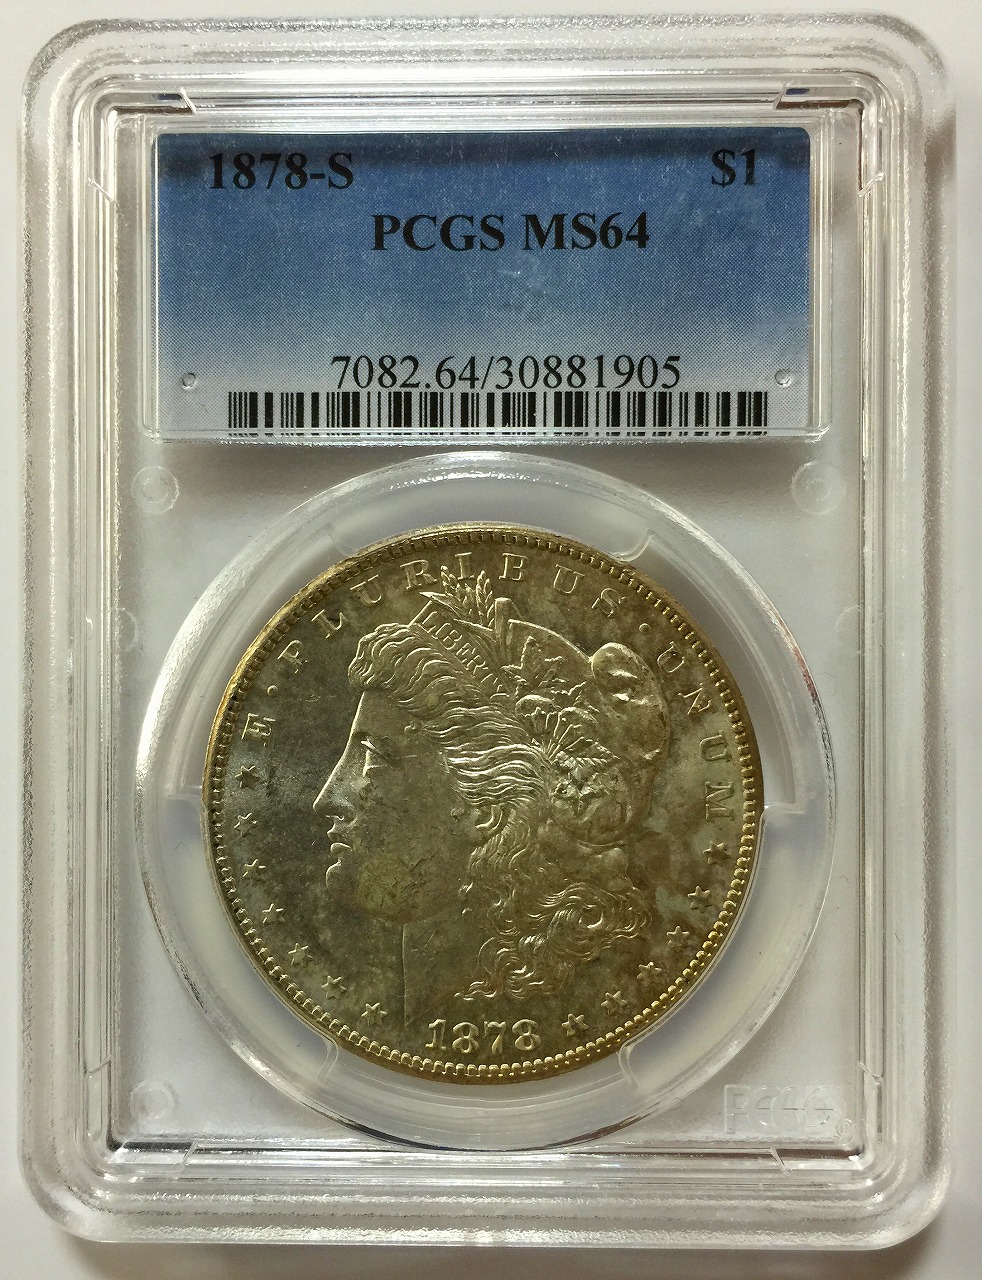 アメリカ銀貨 $1 モルガン 1878年 PCGS MS64